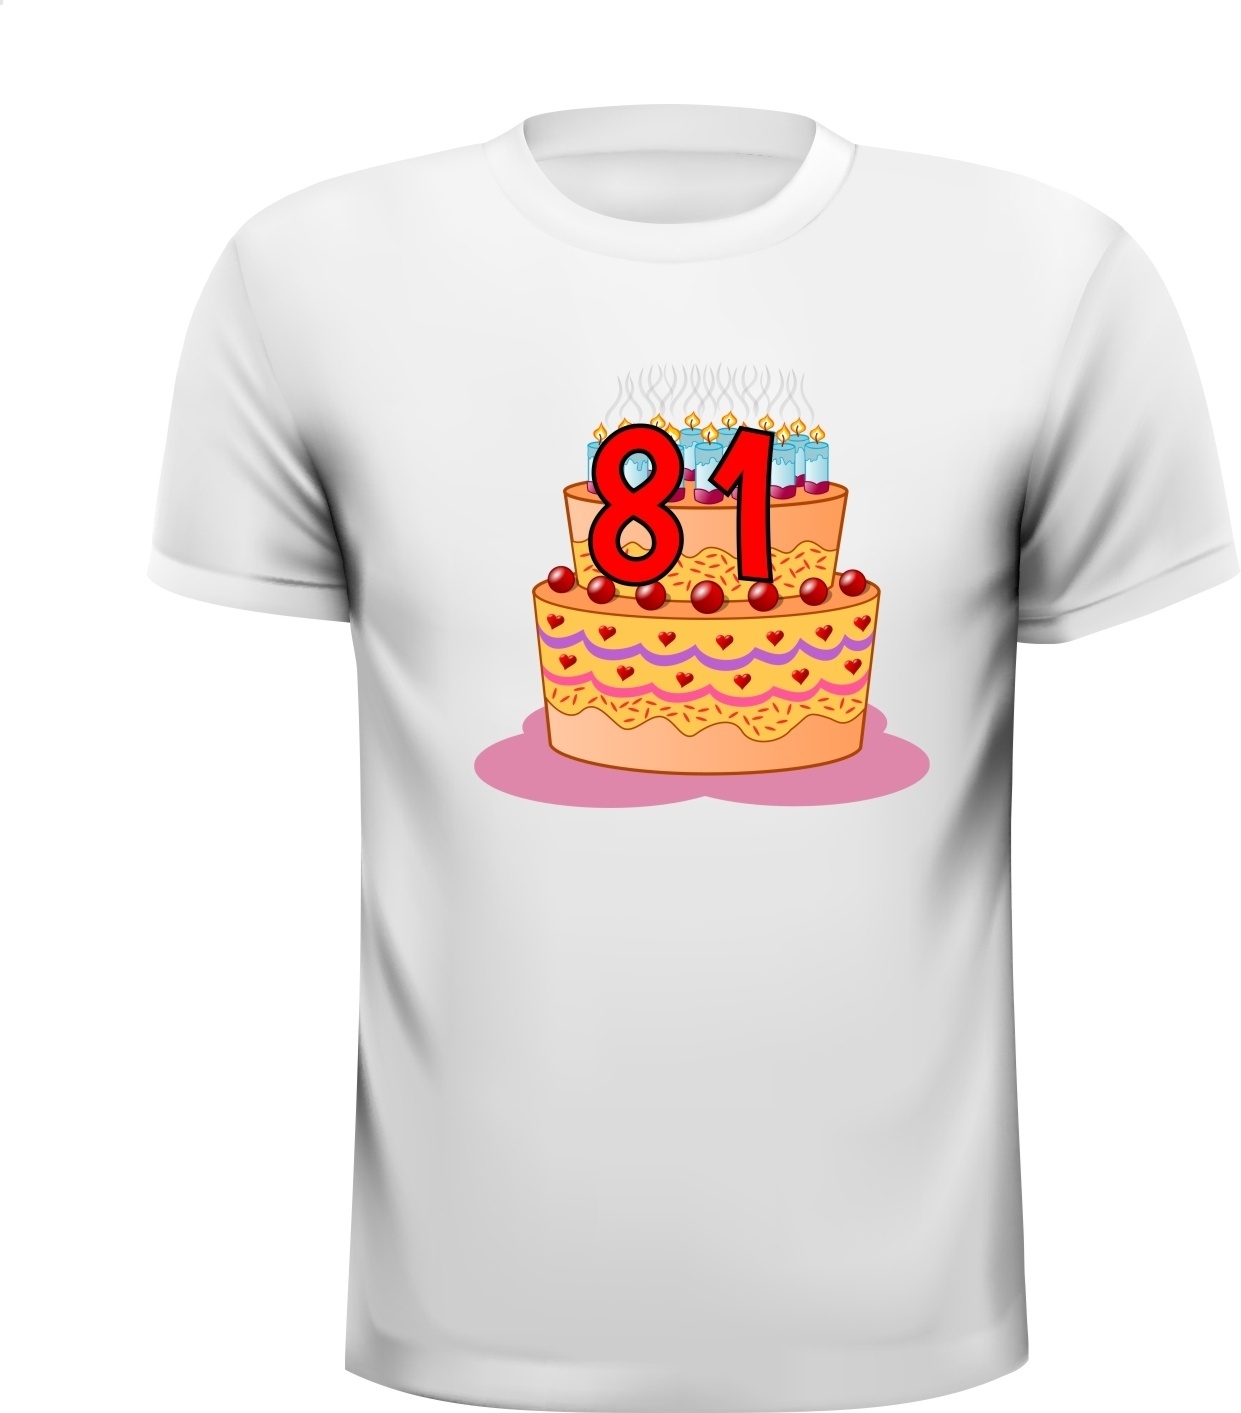 Leuk shirt voor een verjaardag  81 jaar full colour